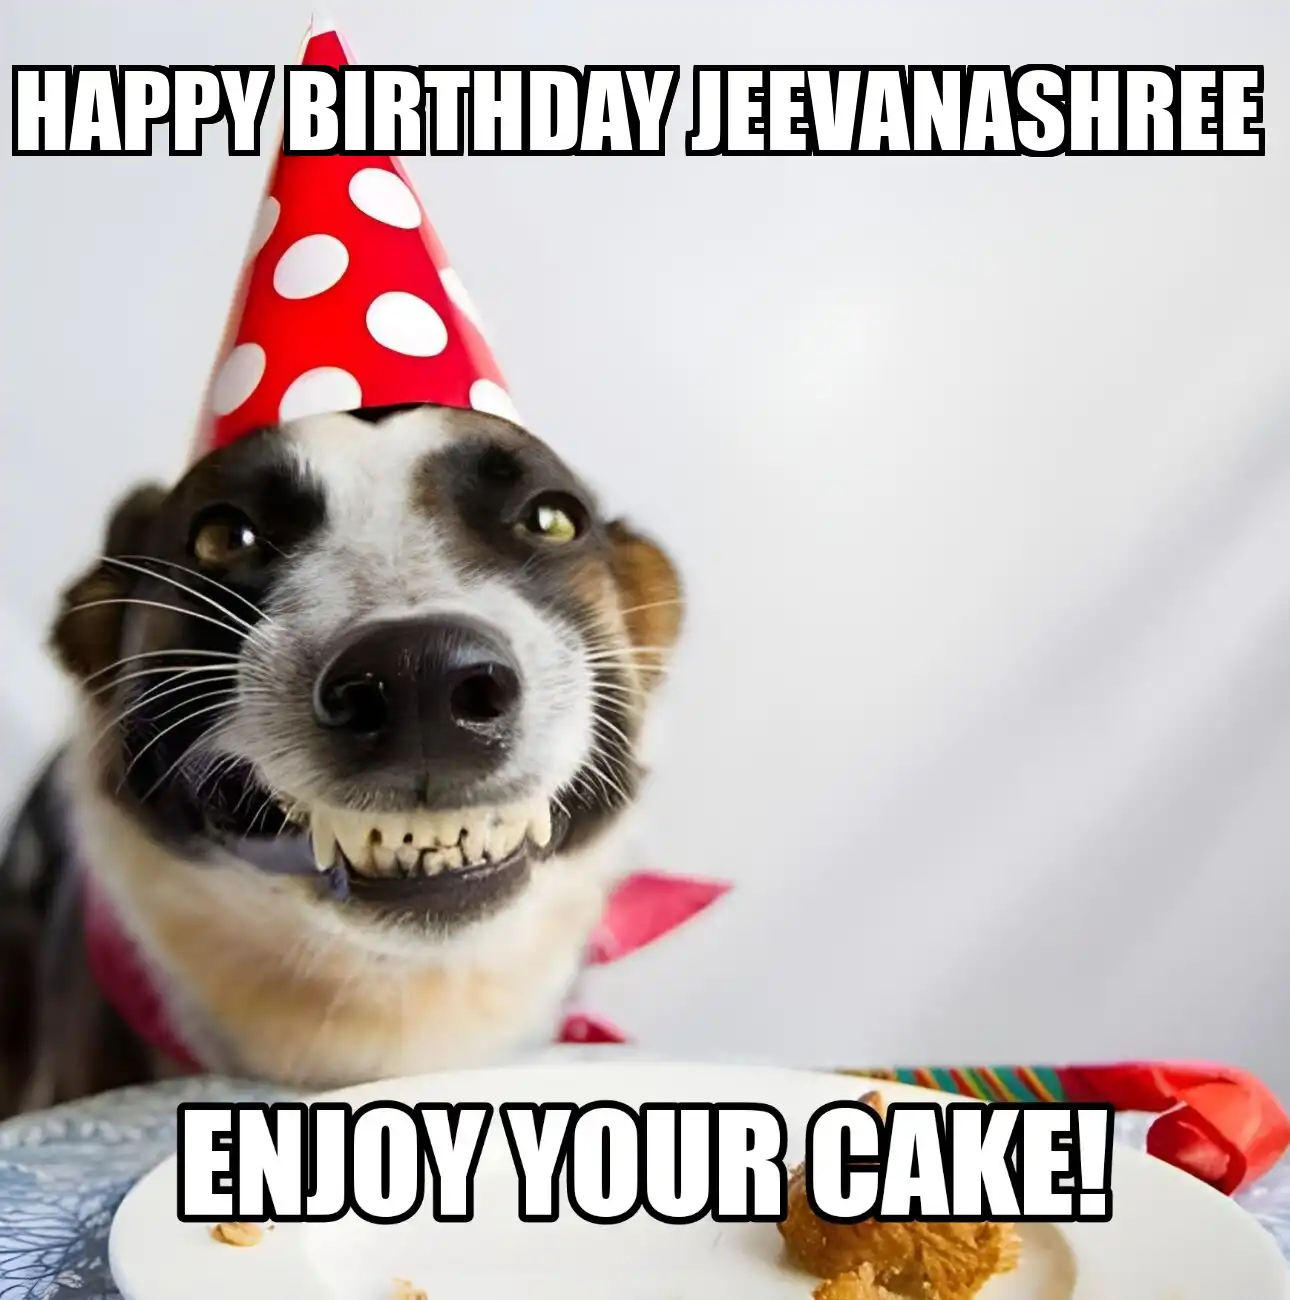 Happy Birthday Jeevanashree Enjoy Your Cake Dog Meme